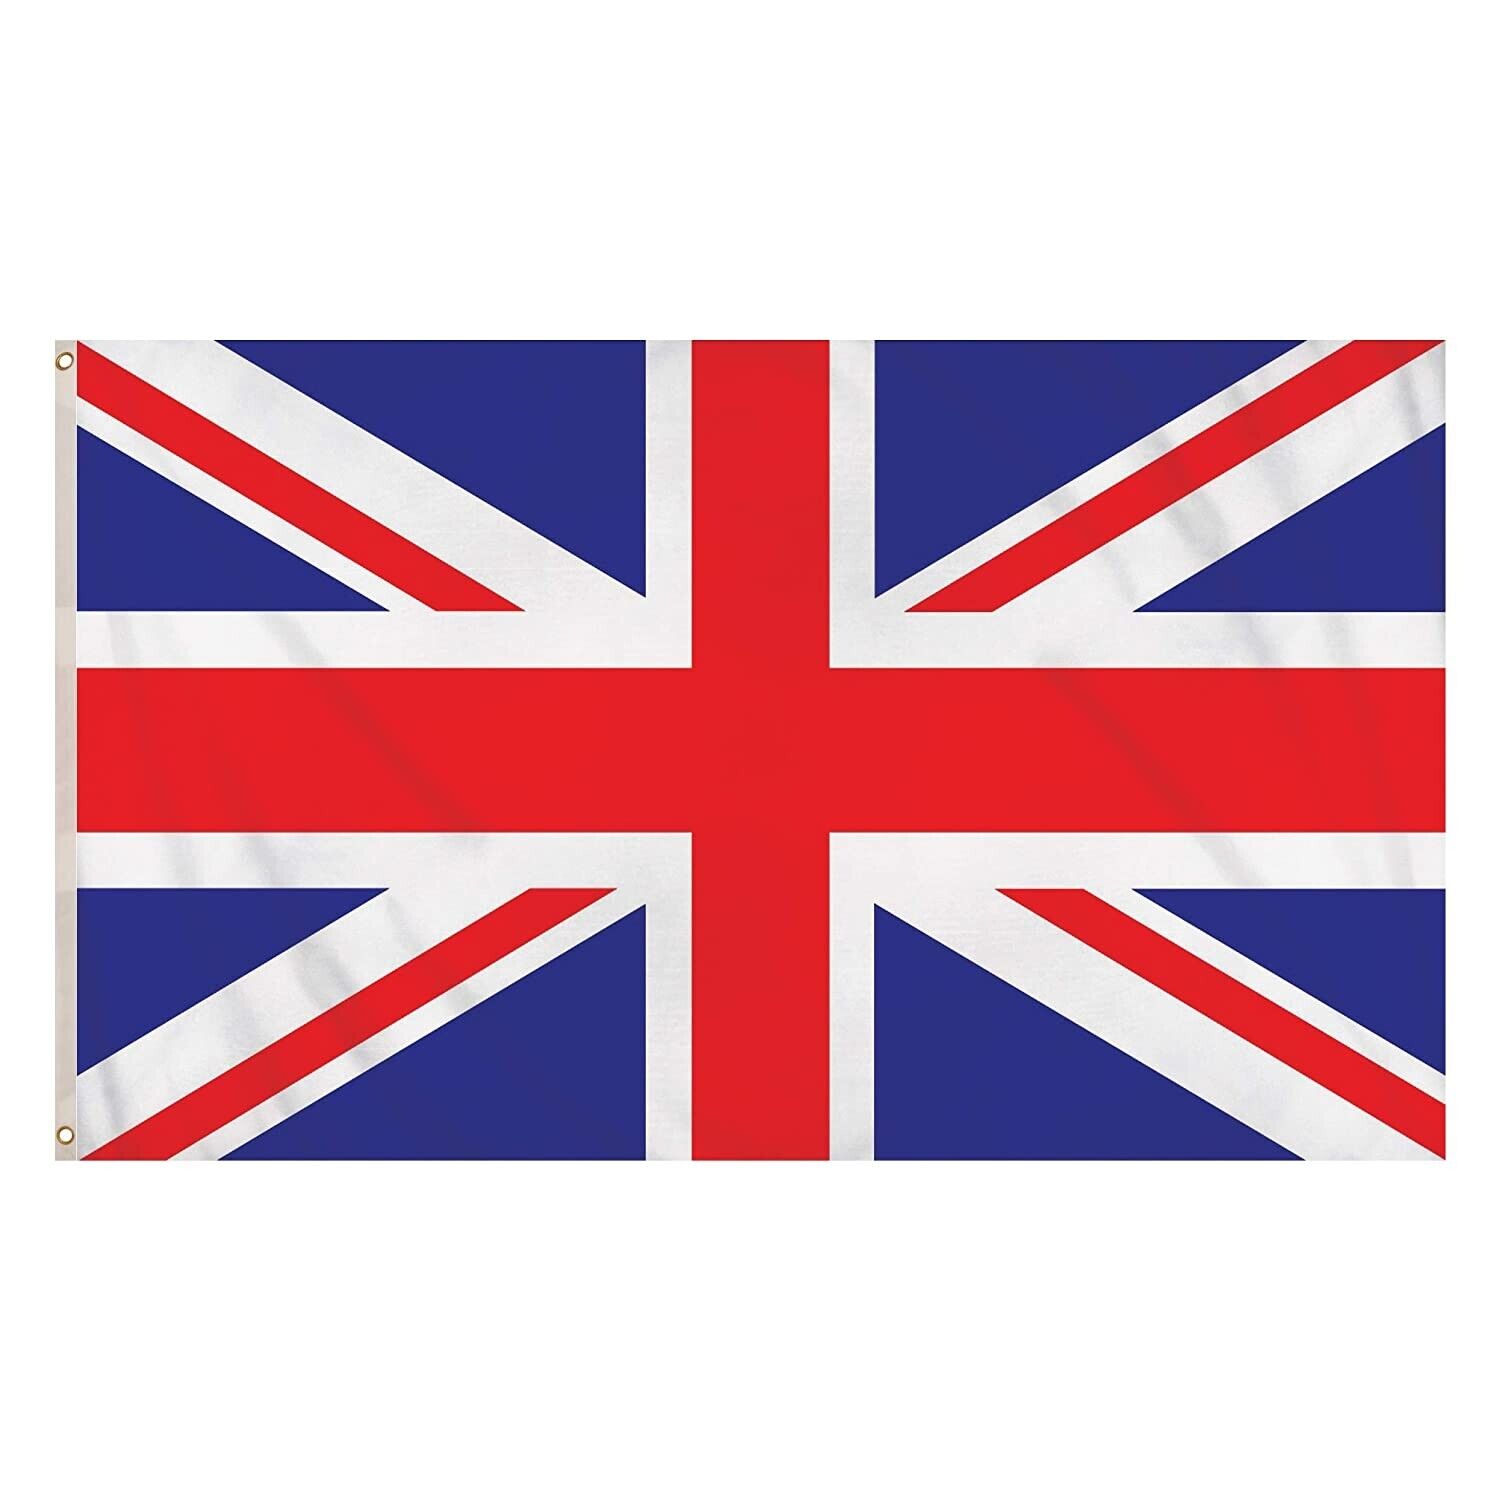 MEDIUM FLAG UNION JACK 3FT X 2FT UNITED KINGDOM BRITISH UK NATIONAL WITH EYELETS